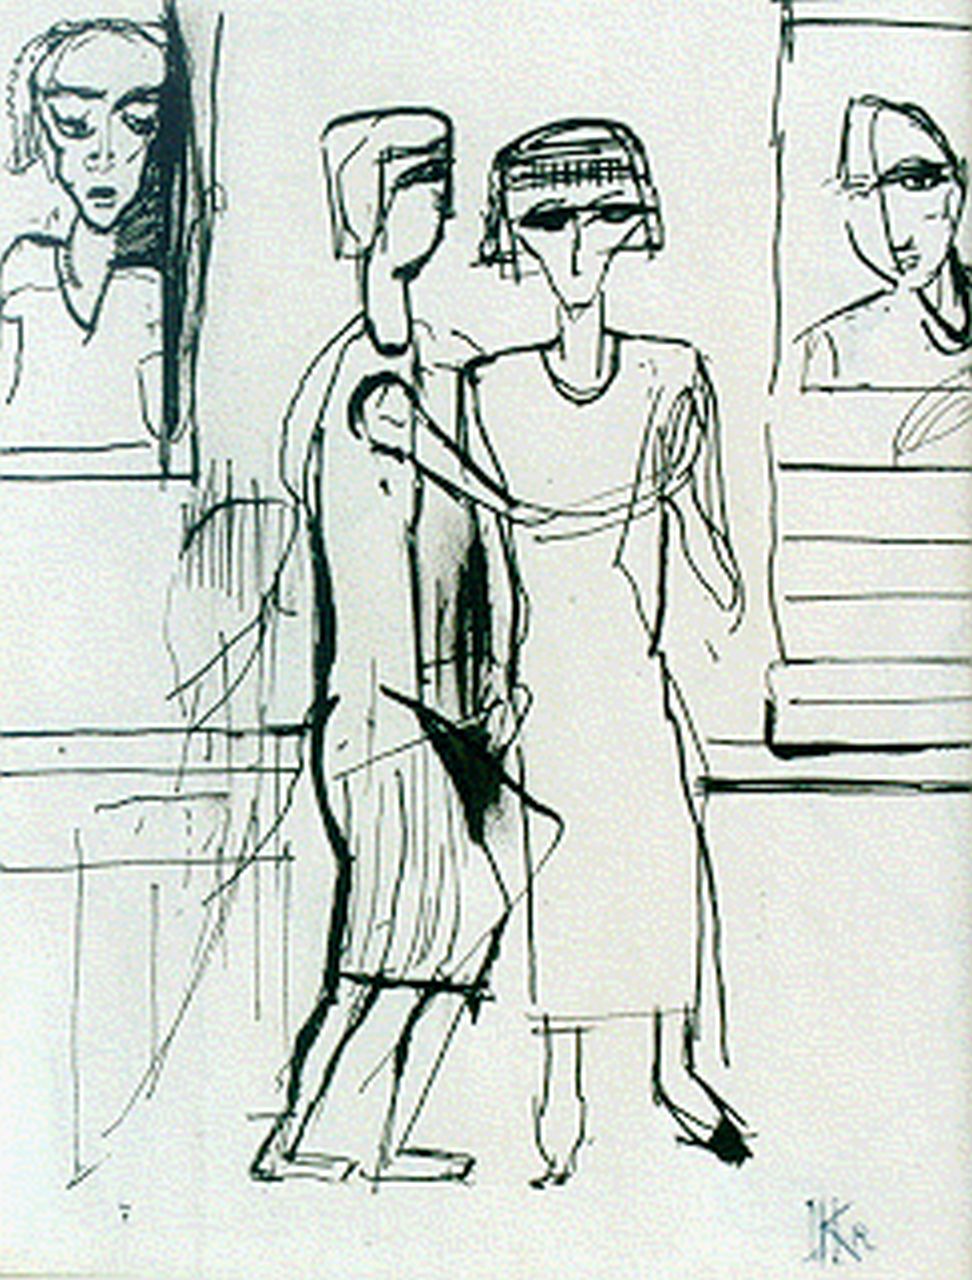 Kruyder H.J.  | 'Herman' Justus Kruyder, Bezoek aan het museum verso: tekening met figuren, Oost-Indische inkt op papier 20,0 x 15,0 cm, gesigneerd monogram rechtsonder